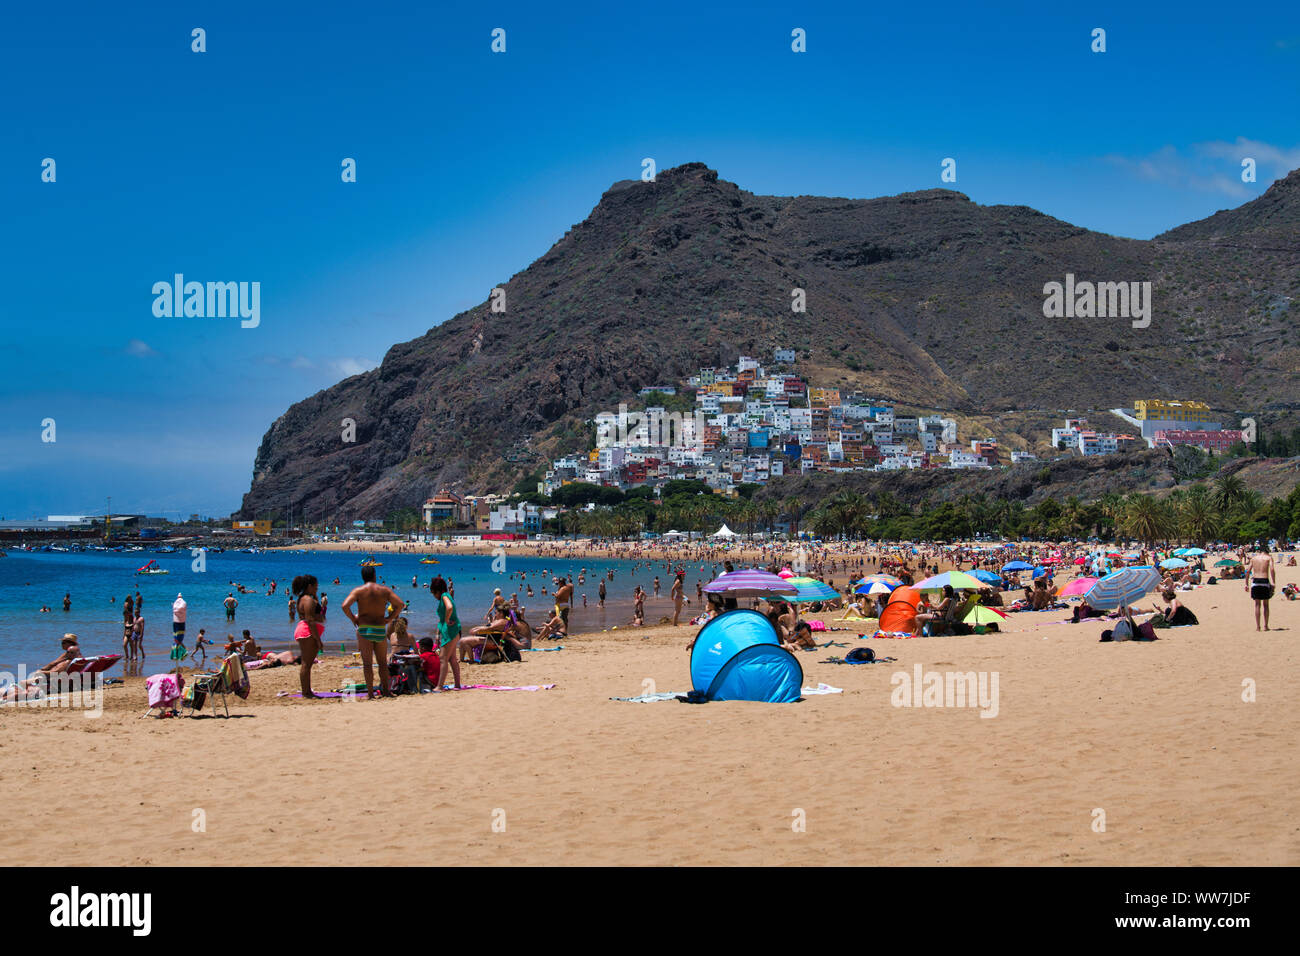 Les touristes sur la plage, Playa de Las Teresitas, El Roque, San AndrÃ©s, Tenerife, Canaries, Espagne Banque D'Images